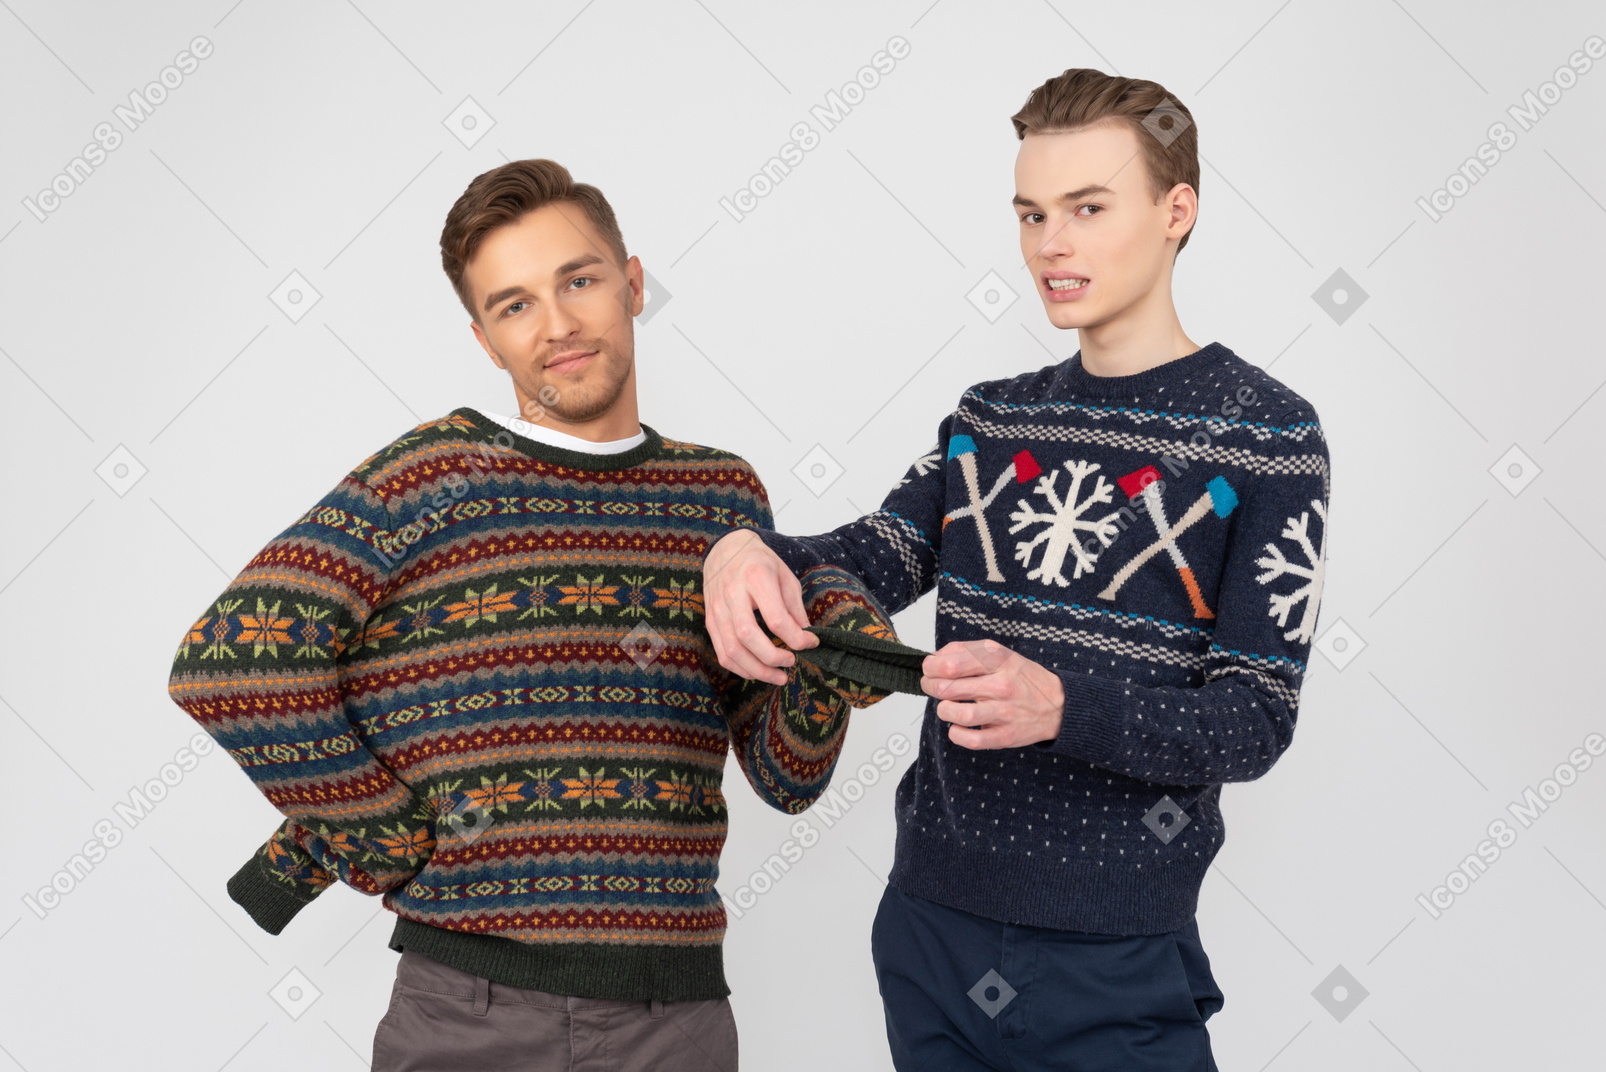 Человек пытается починить рукав свитера своего брата